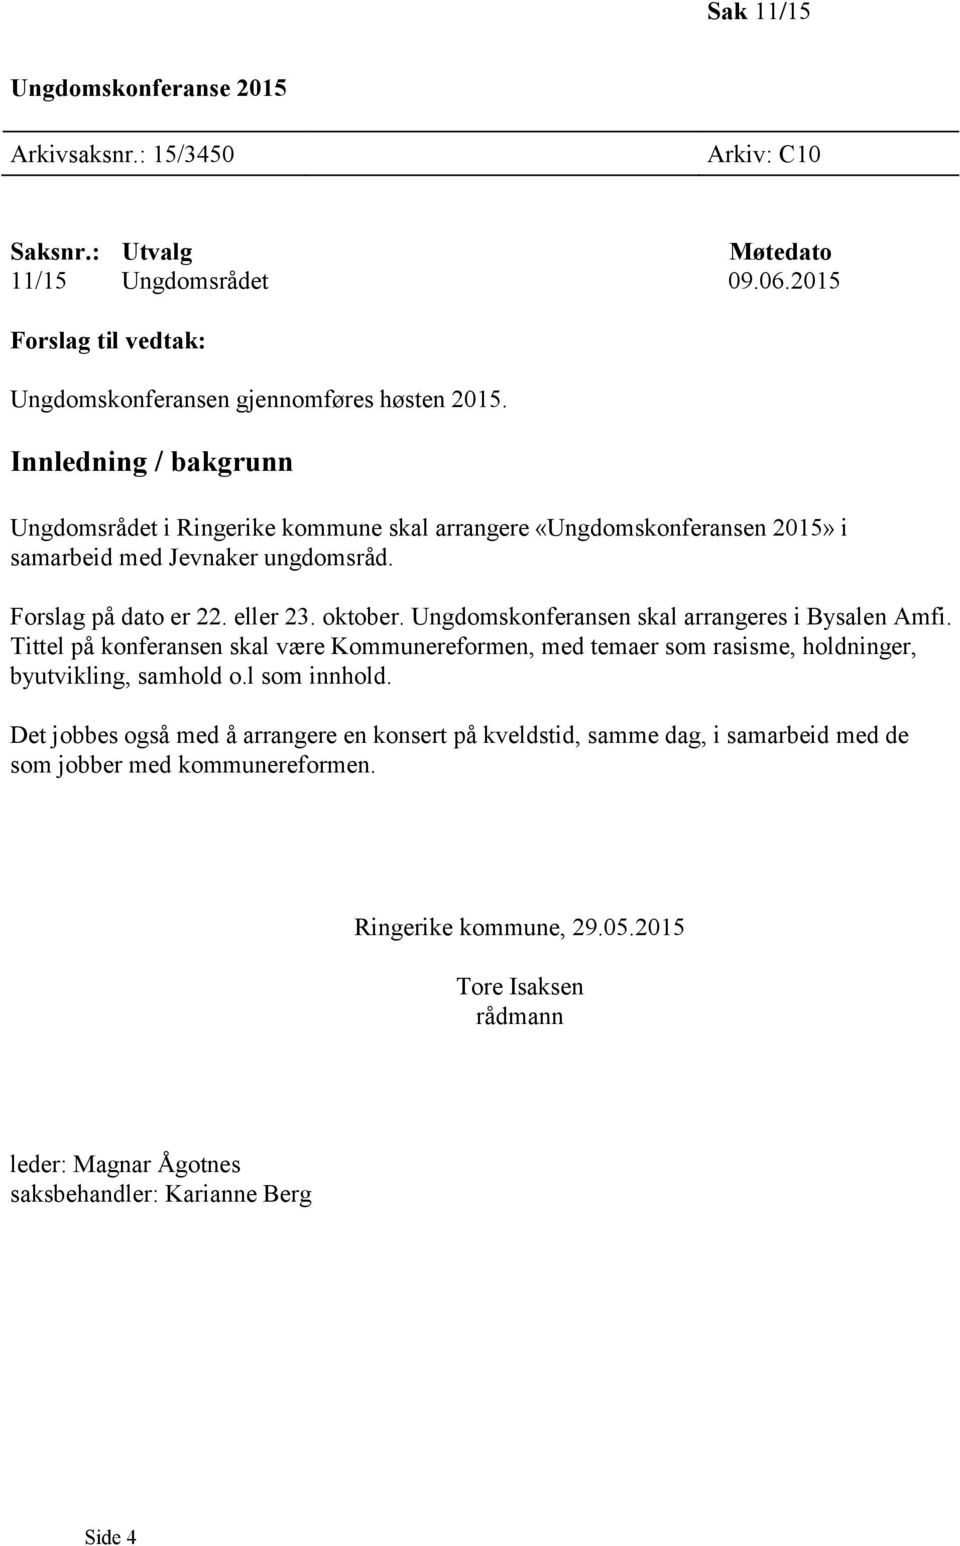 Ungdomsrådet i Ringerike kommune skal arrangere «Ungdomskonferansen 2015» i samarbeid med Jevnaker ungdomsråd. Forslag på dato er 22. eller 23. oktober.